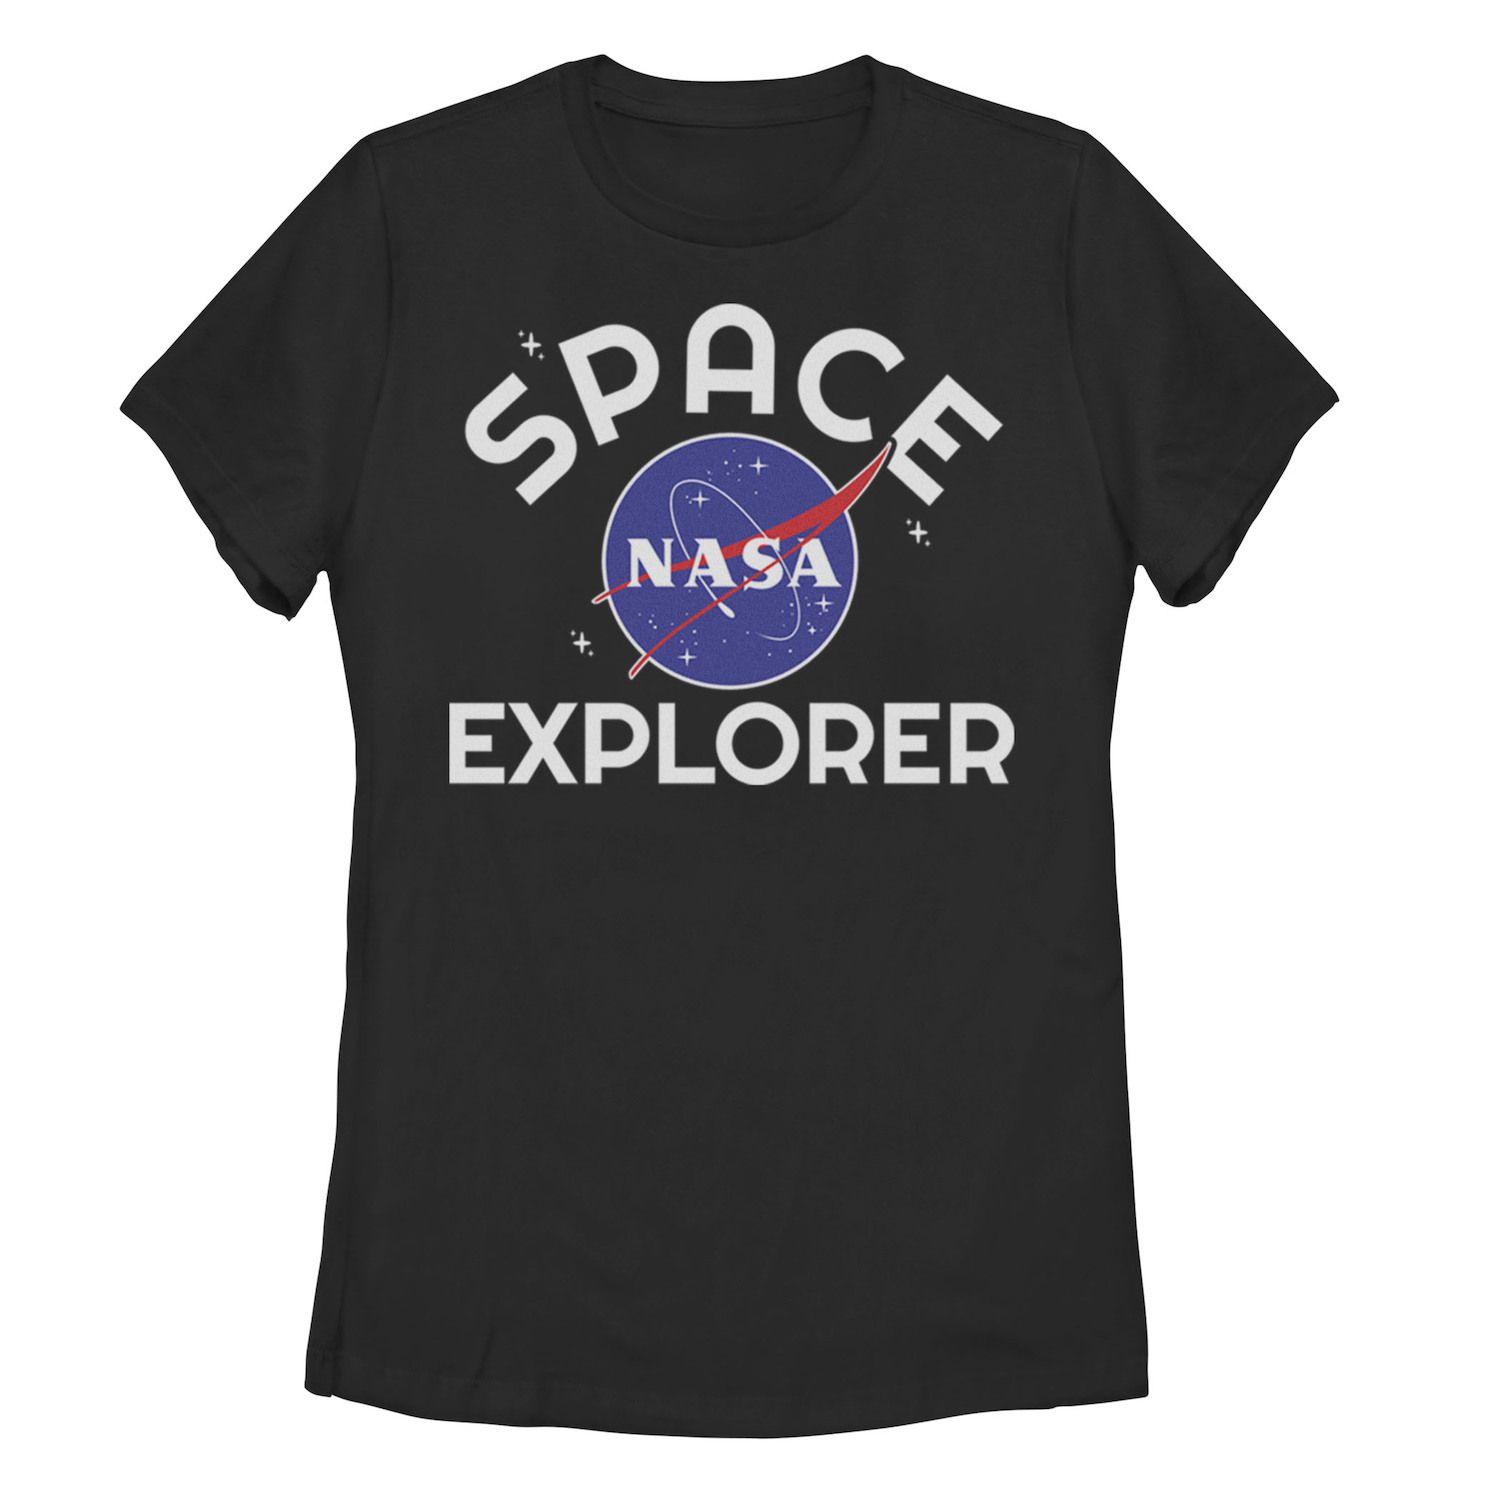 Футболка NASA Space Explorer для юниоров с простым логотипом Licensed Character